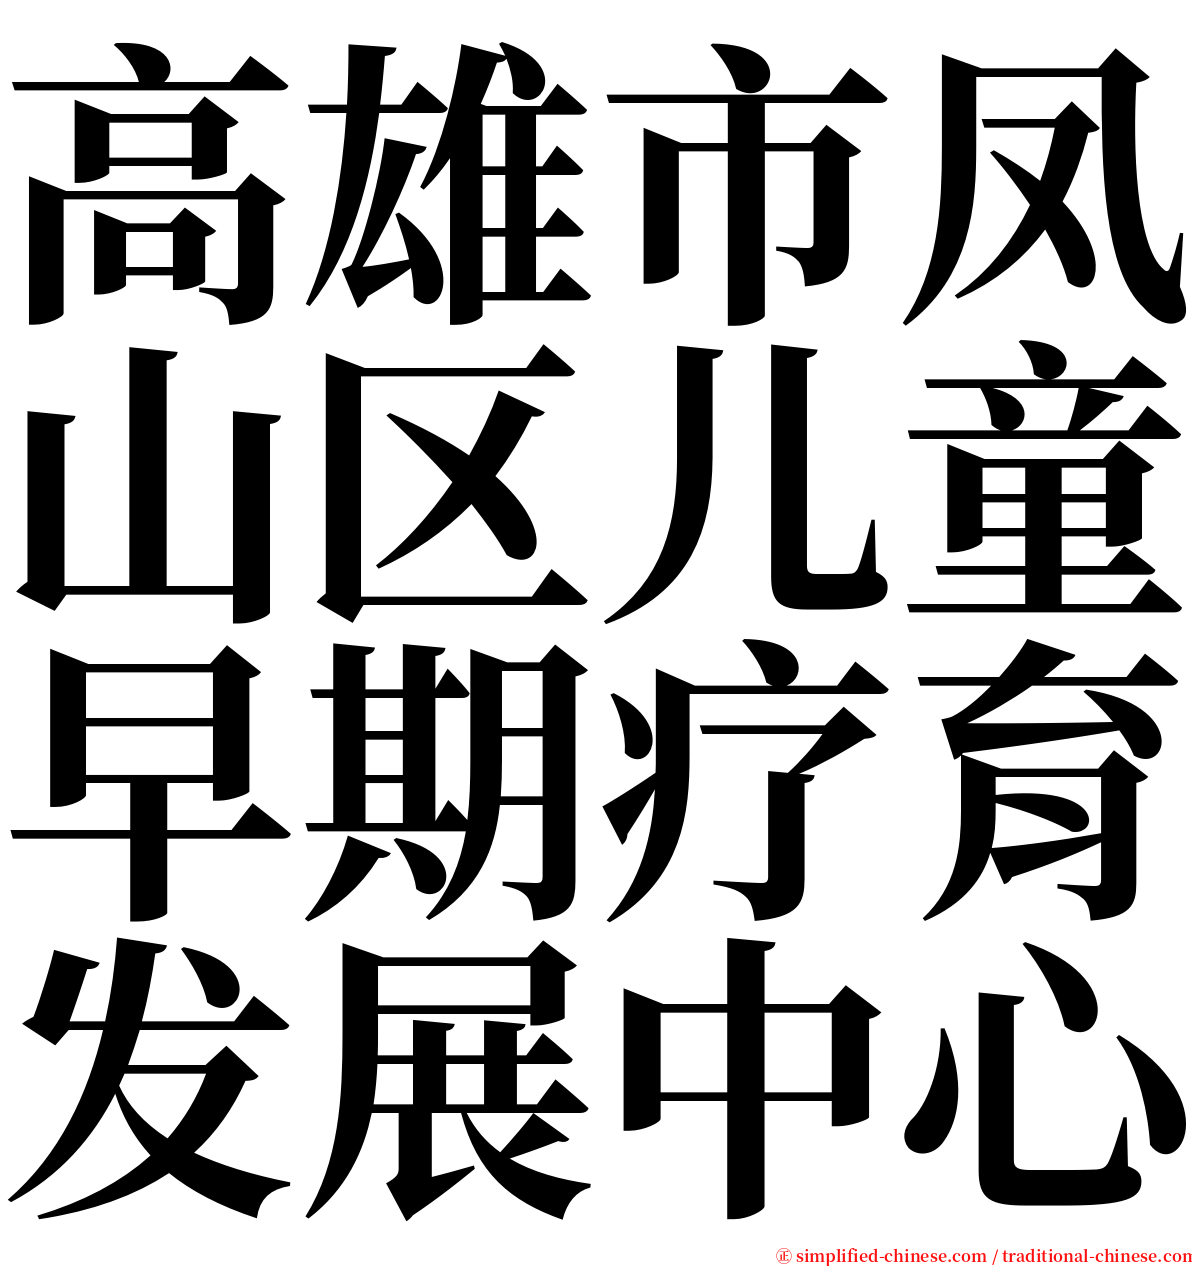 高雄市凤山区儿童早期疗育发展中心 serif font